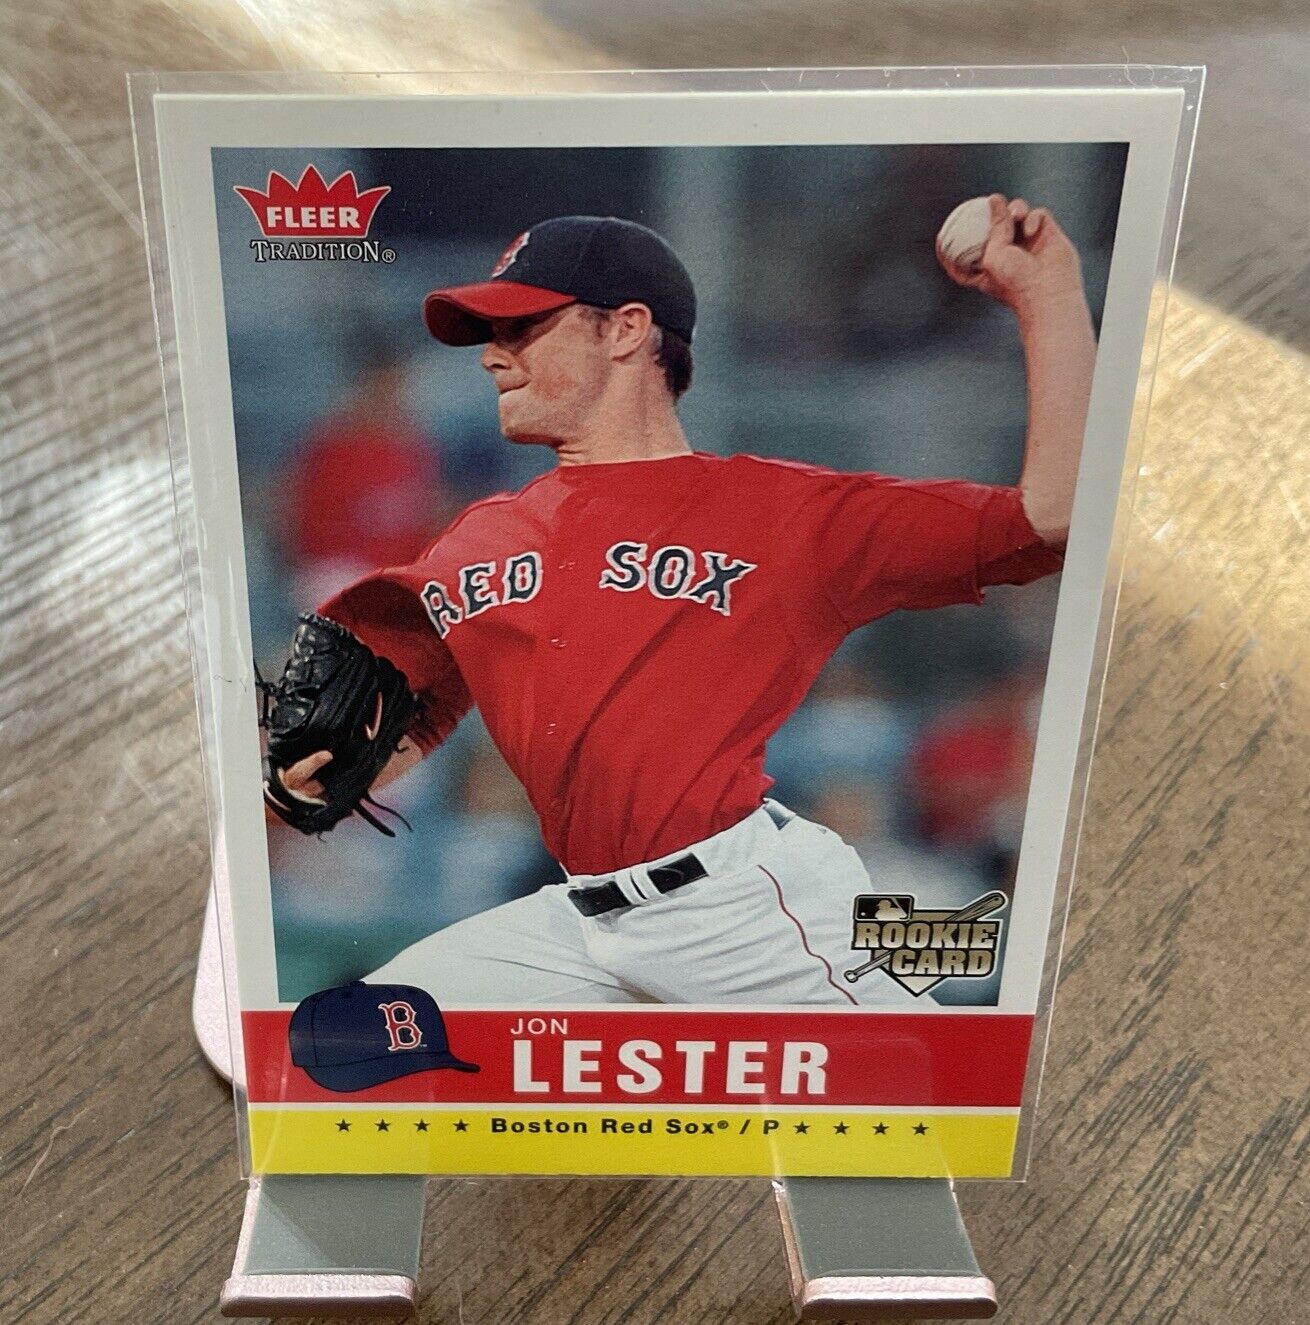 2006 Fleer Baseball Card #54 Jon Lester Rookie Boston Red Sox